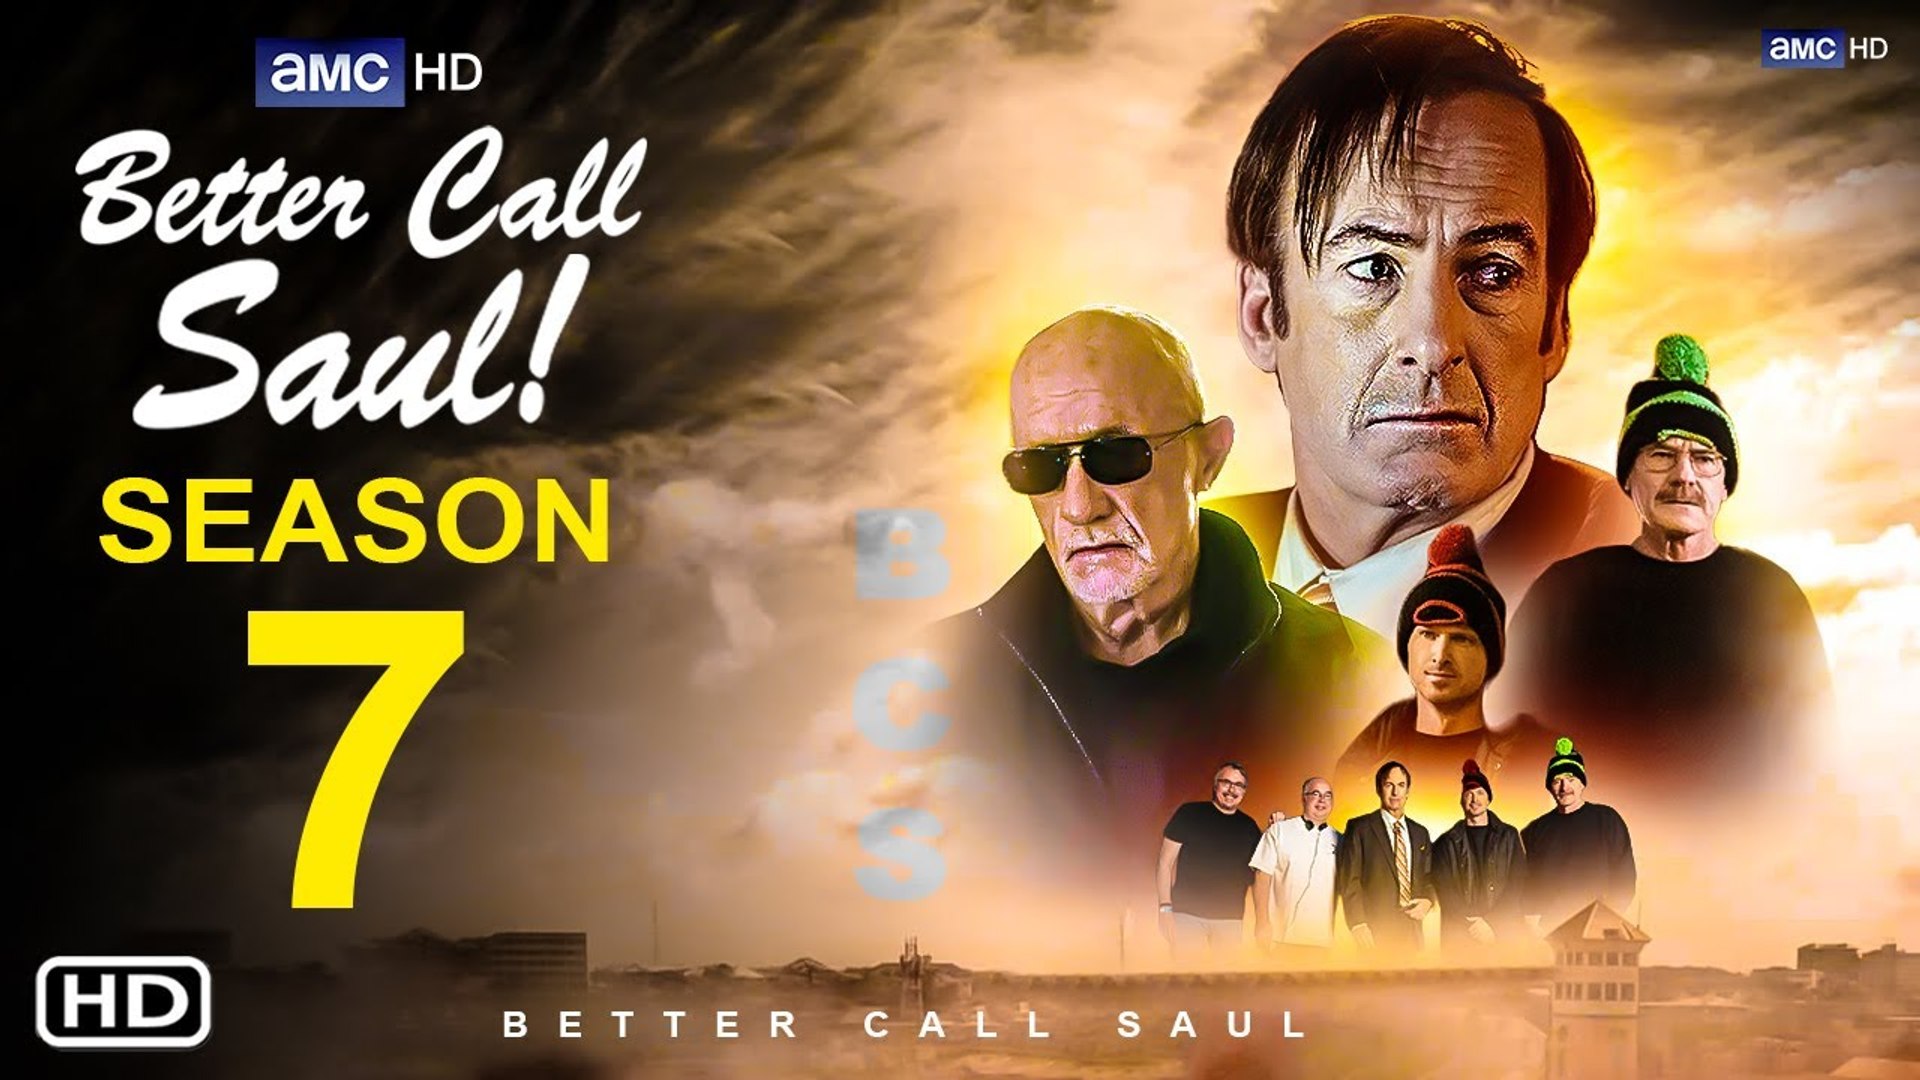 Better Call Saul Season 7 Teaser (HD) - Bob Odenkirk - video Dailymotion